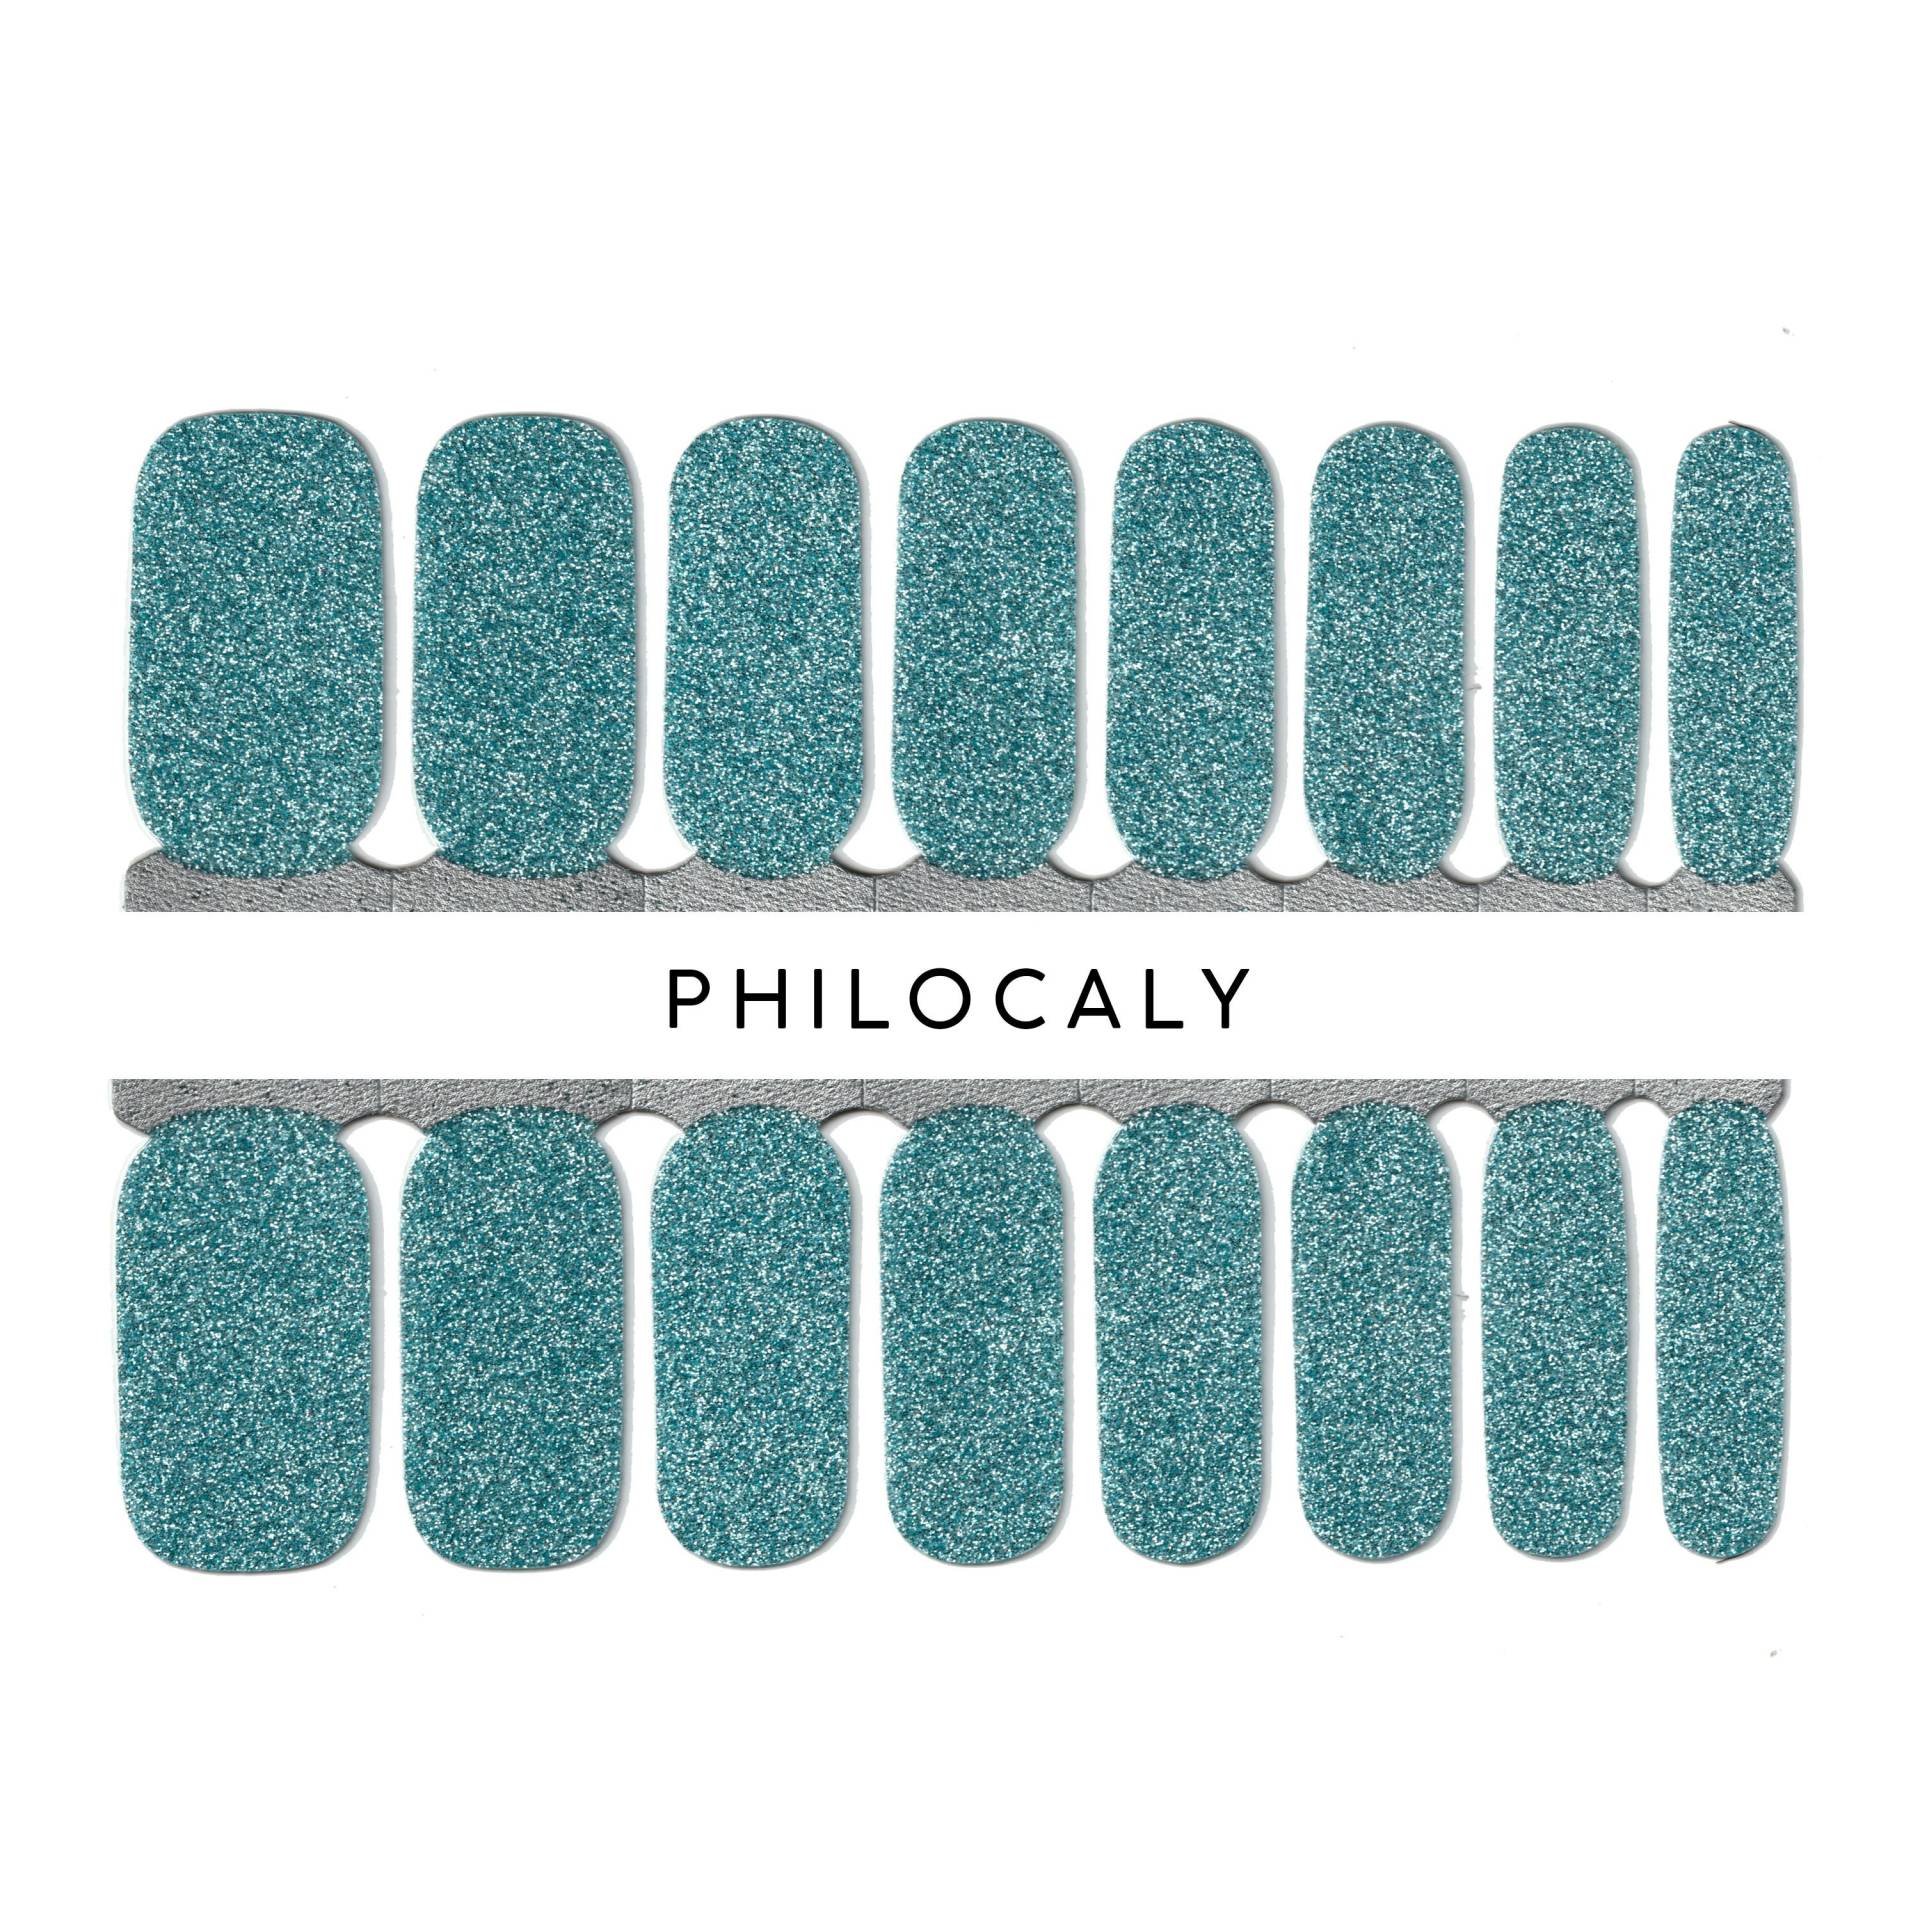 Blaue Einfarbige Farbe - Nagelstreifen, Nagelverpackungen, Nagellackkunst, Nagelaufkleber von PhilocalyNailStrips